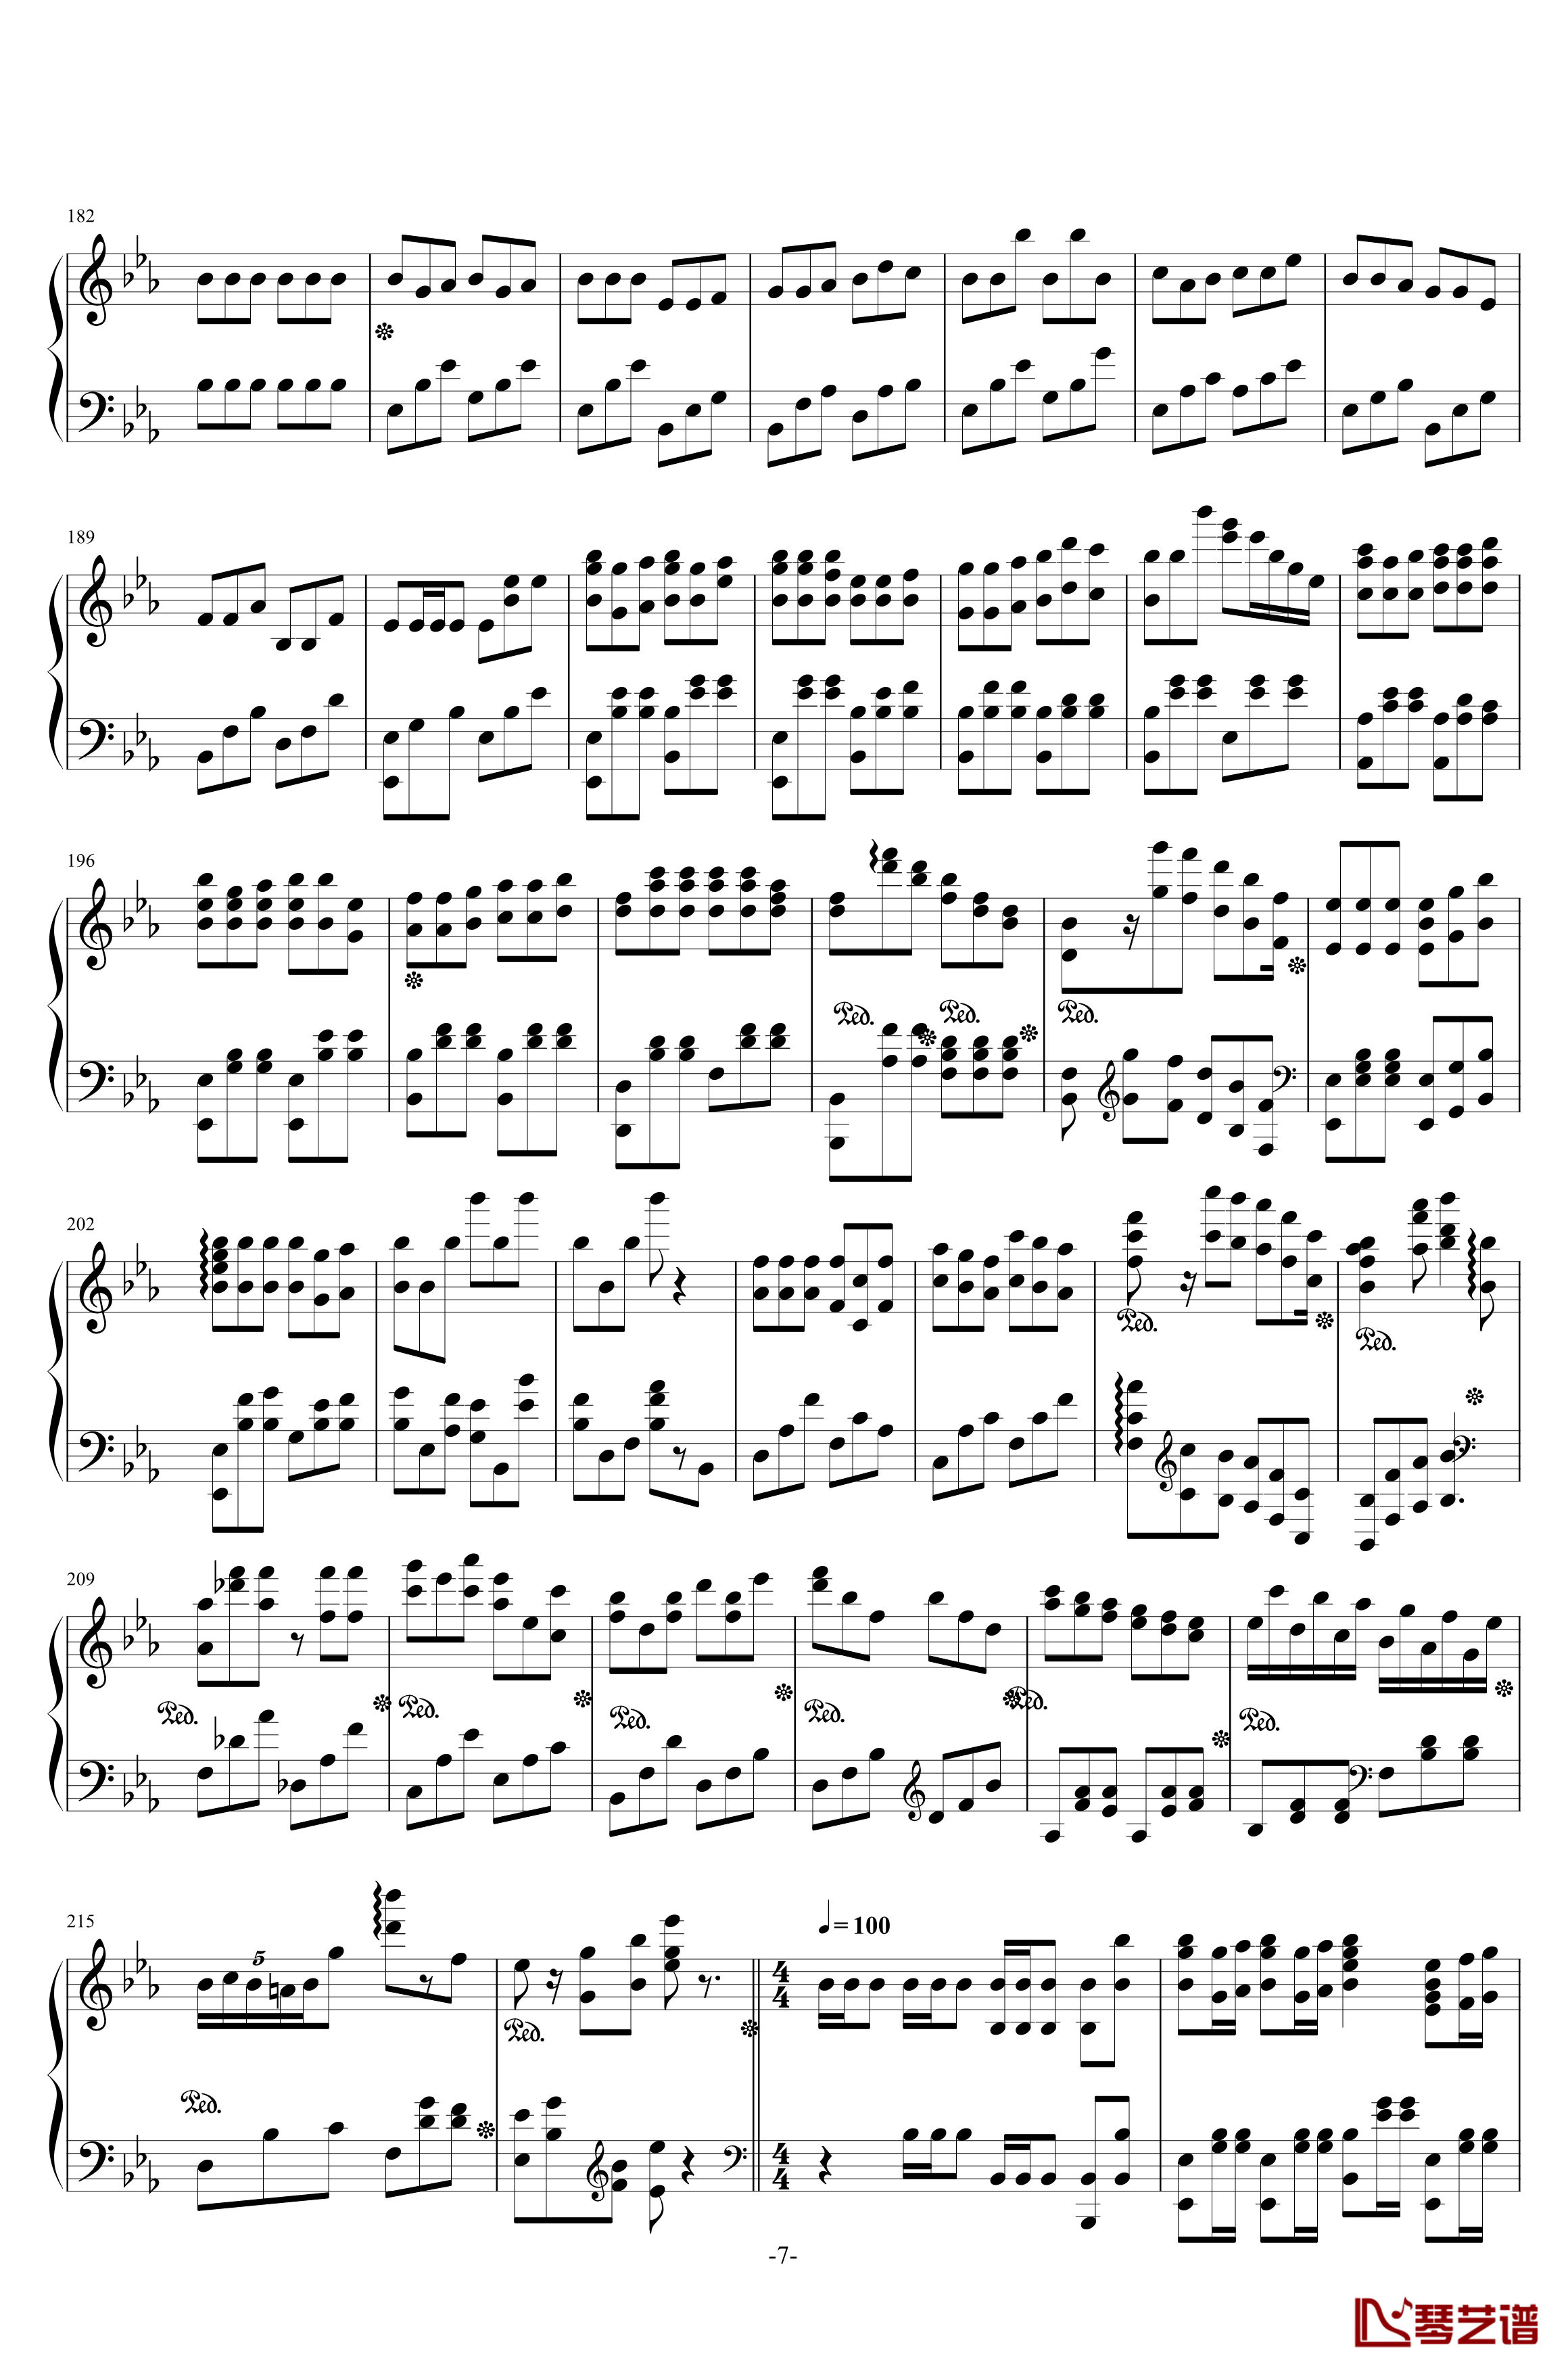 西安音乐学院校歌钢琴谱-校园歌曲7